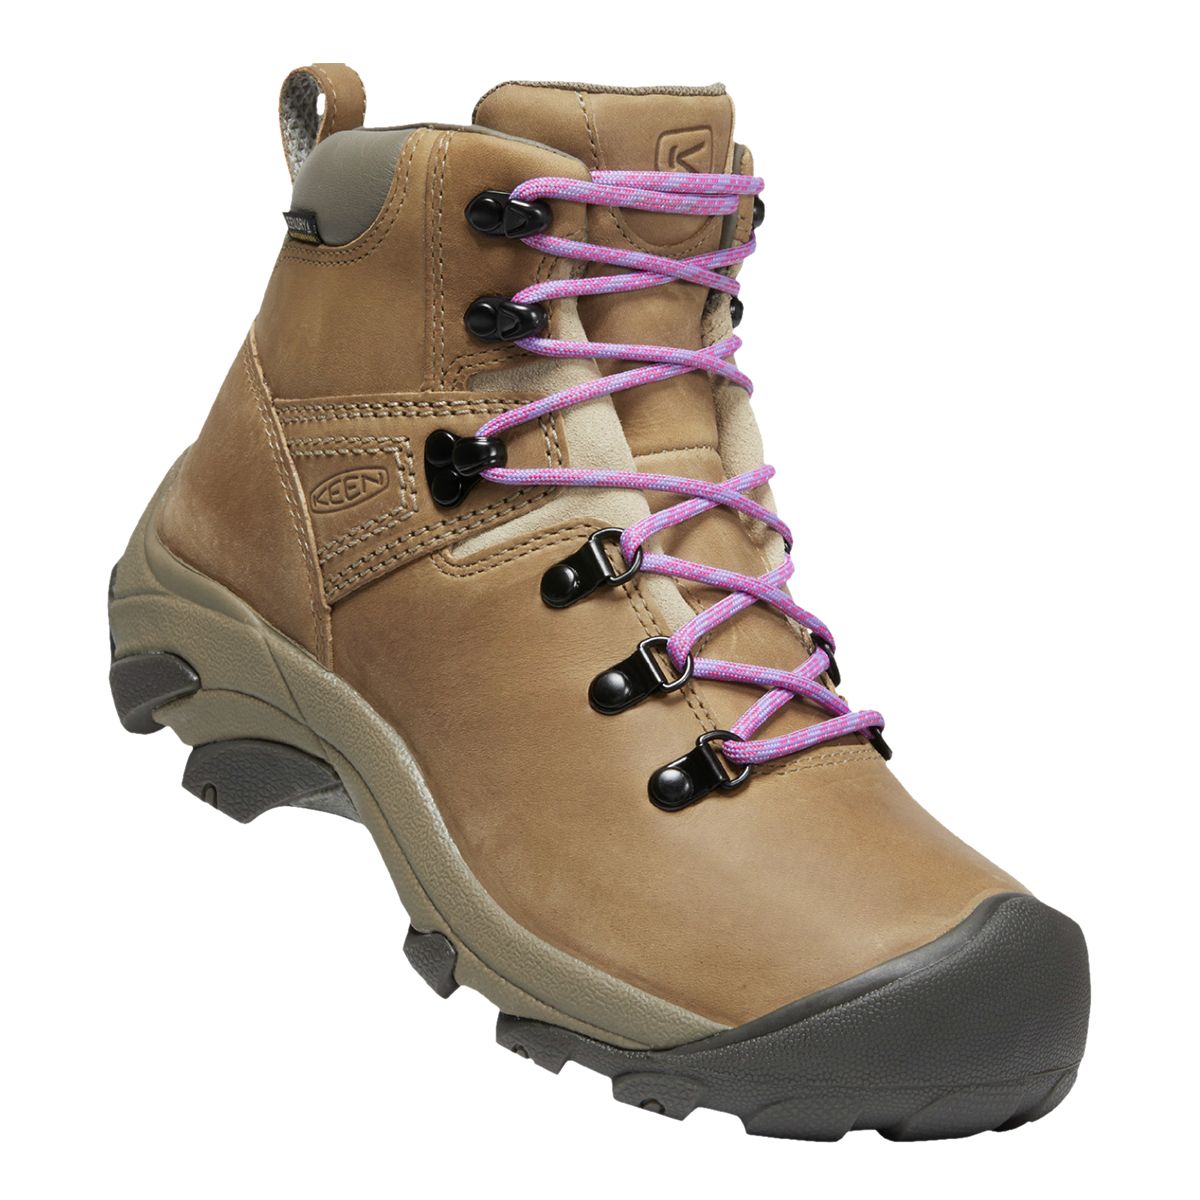 Merrell Women's Crosslander 2 Hiking Boots, Waterproof